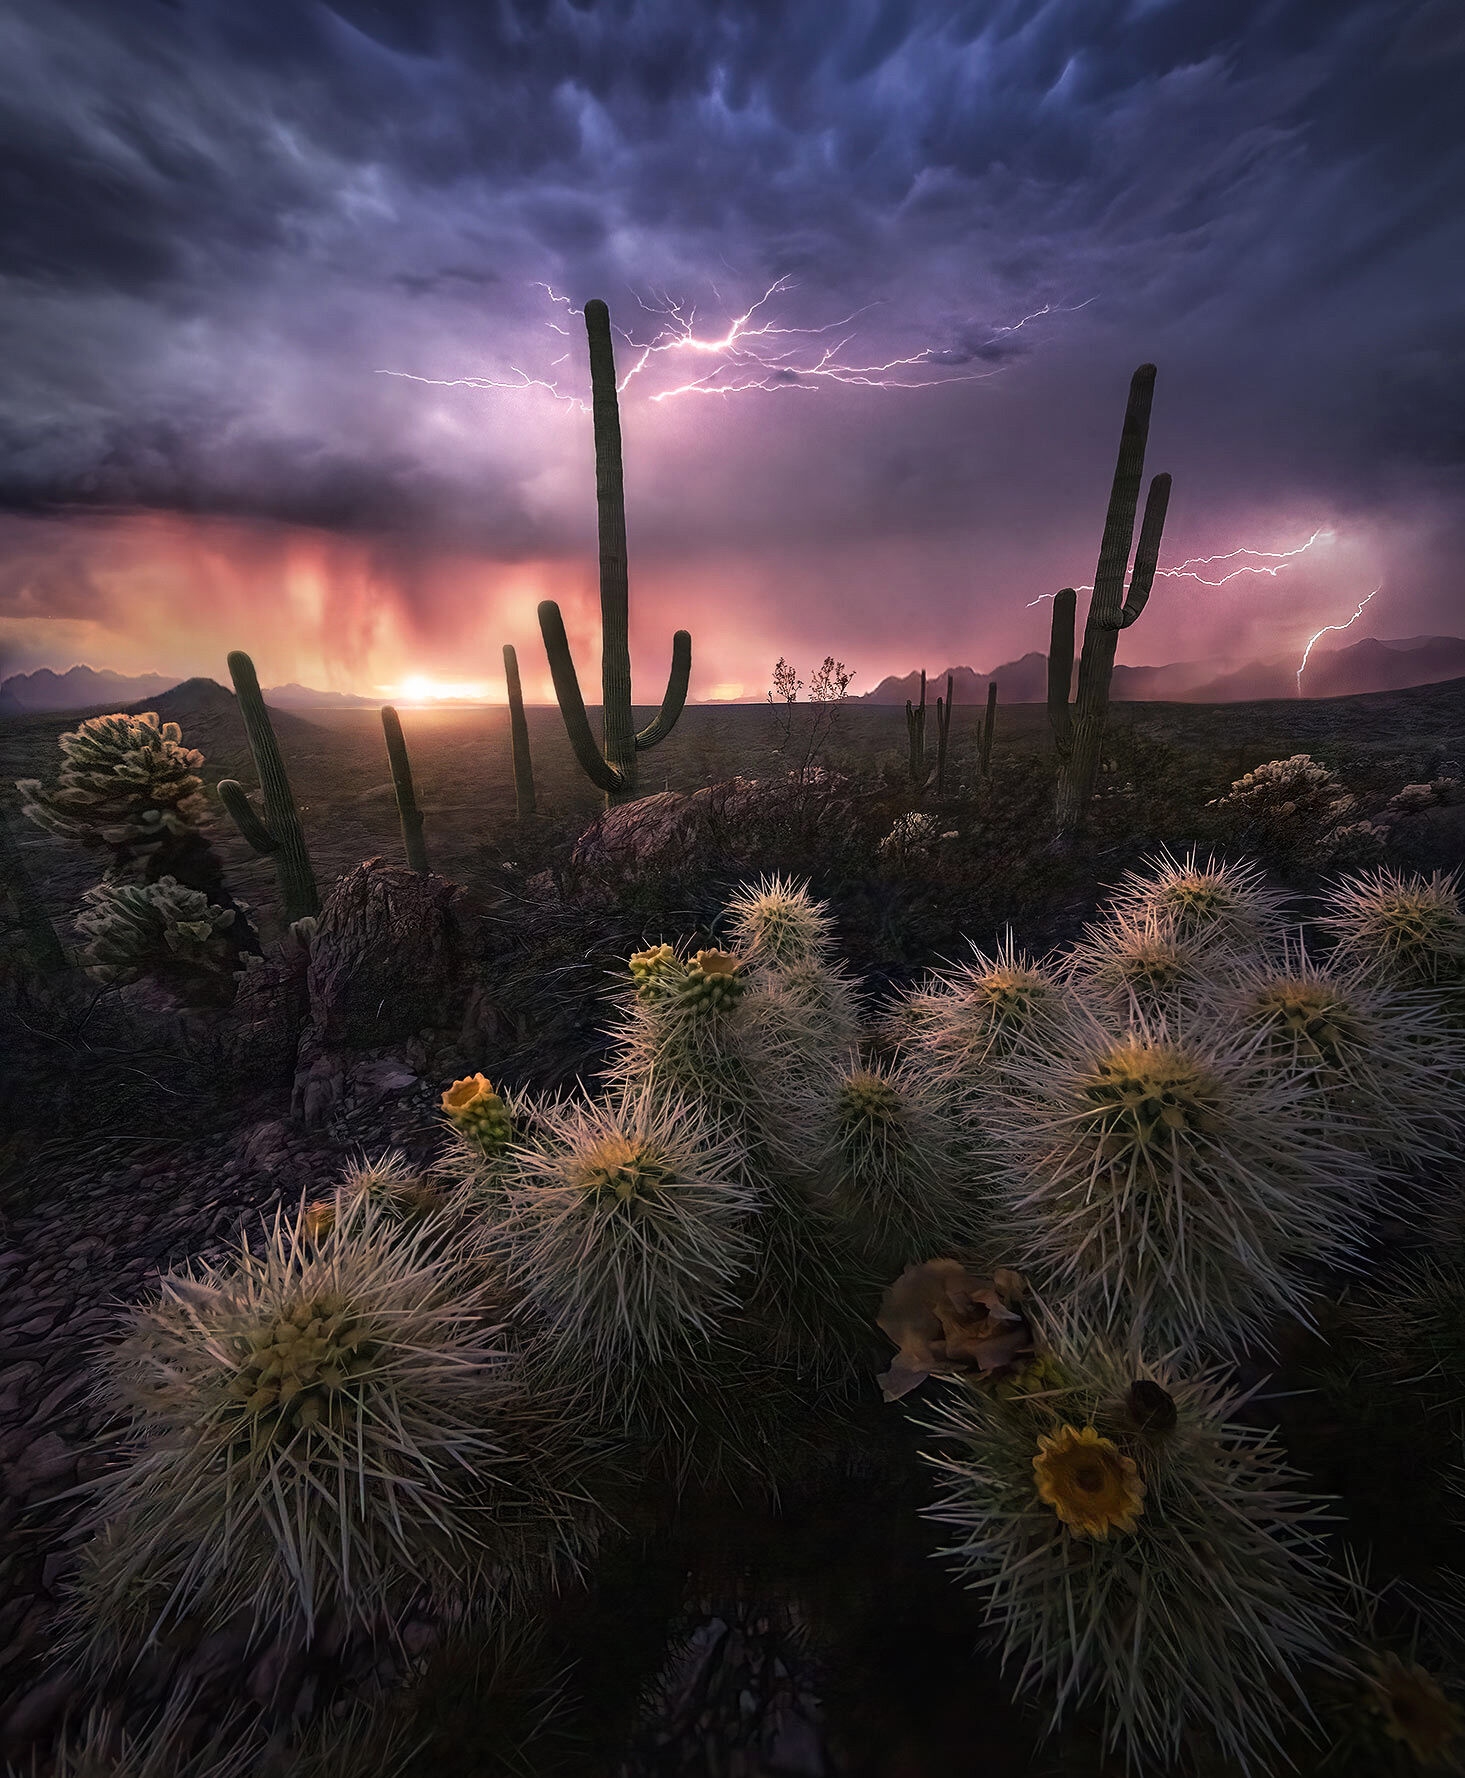 storm, chase, Arizona, Southwest, saguaro, cholla, cactus, sunset, lightning